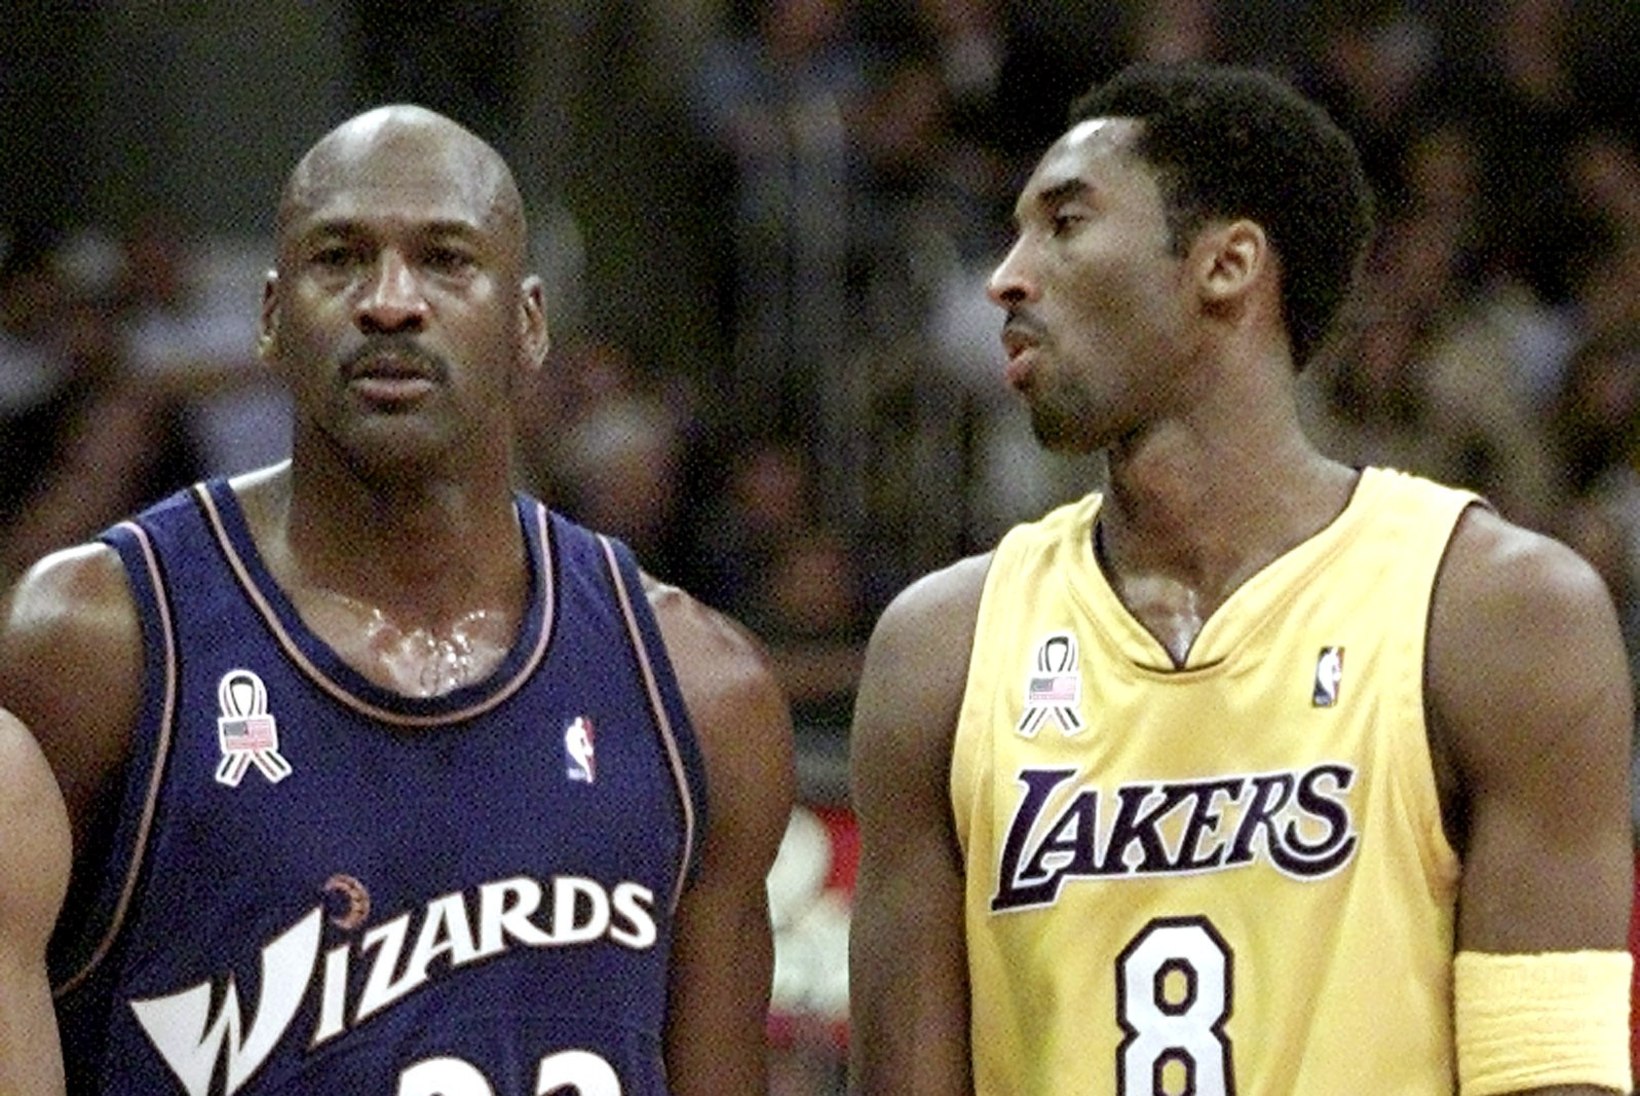 VIIMANE SÕNUMIVAHETUS: legendaarne Michael Jordan avalikustas, mis ta enne traagilist õnnetust Kobe Bryantile kirjutas